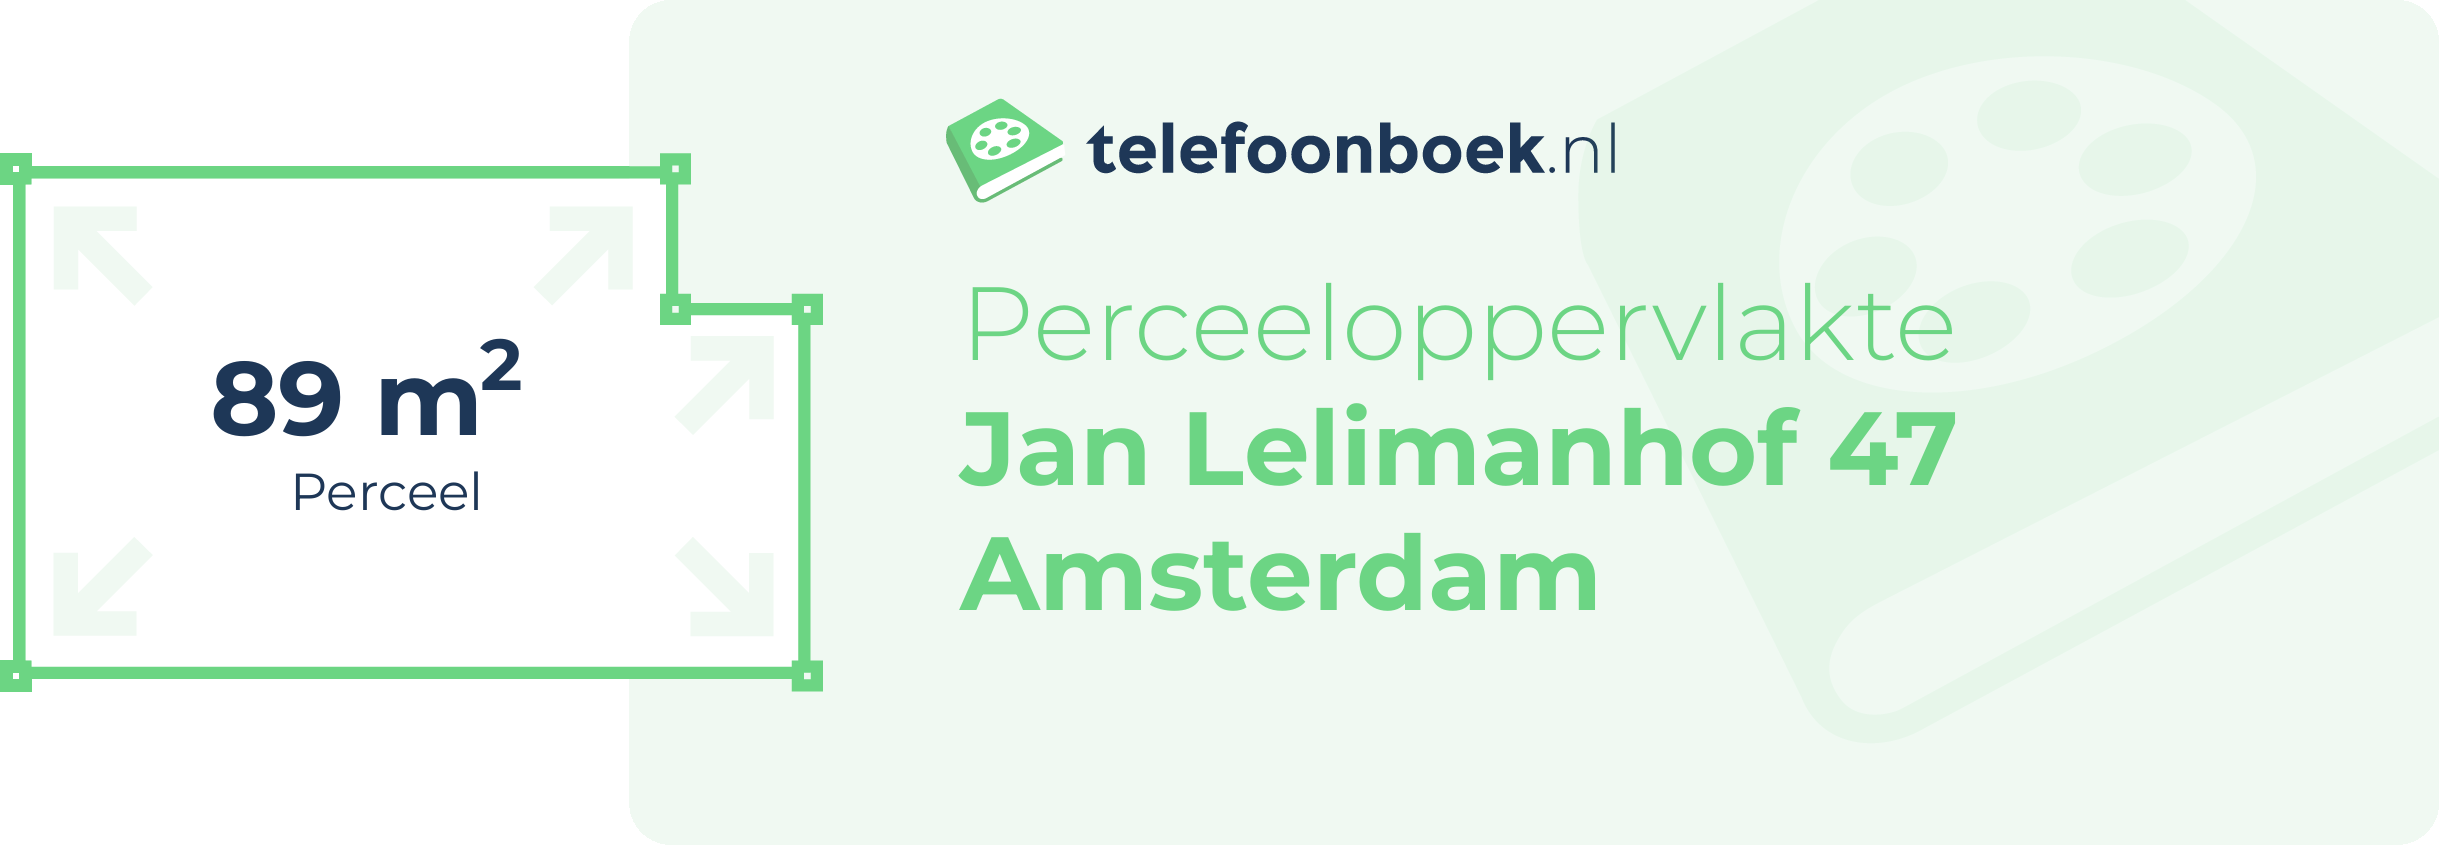 Perceeloppervlakte Jan Lelimanhof 47 Amsterdam